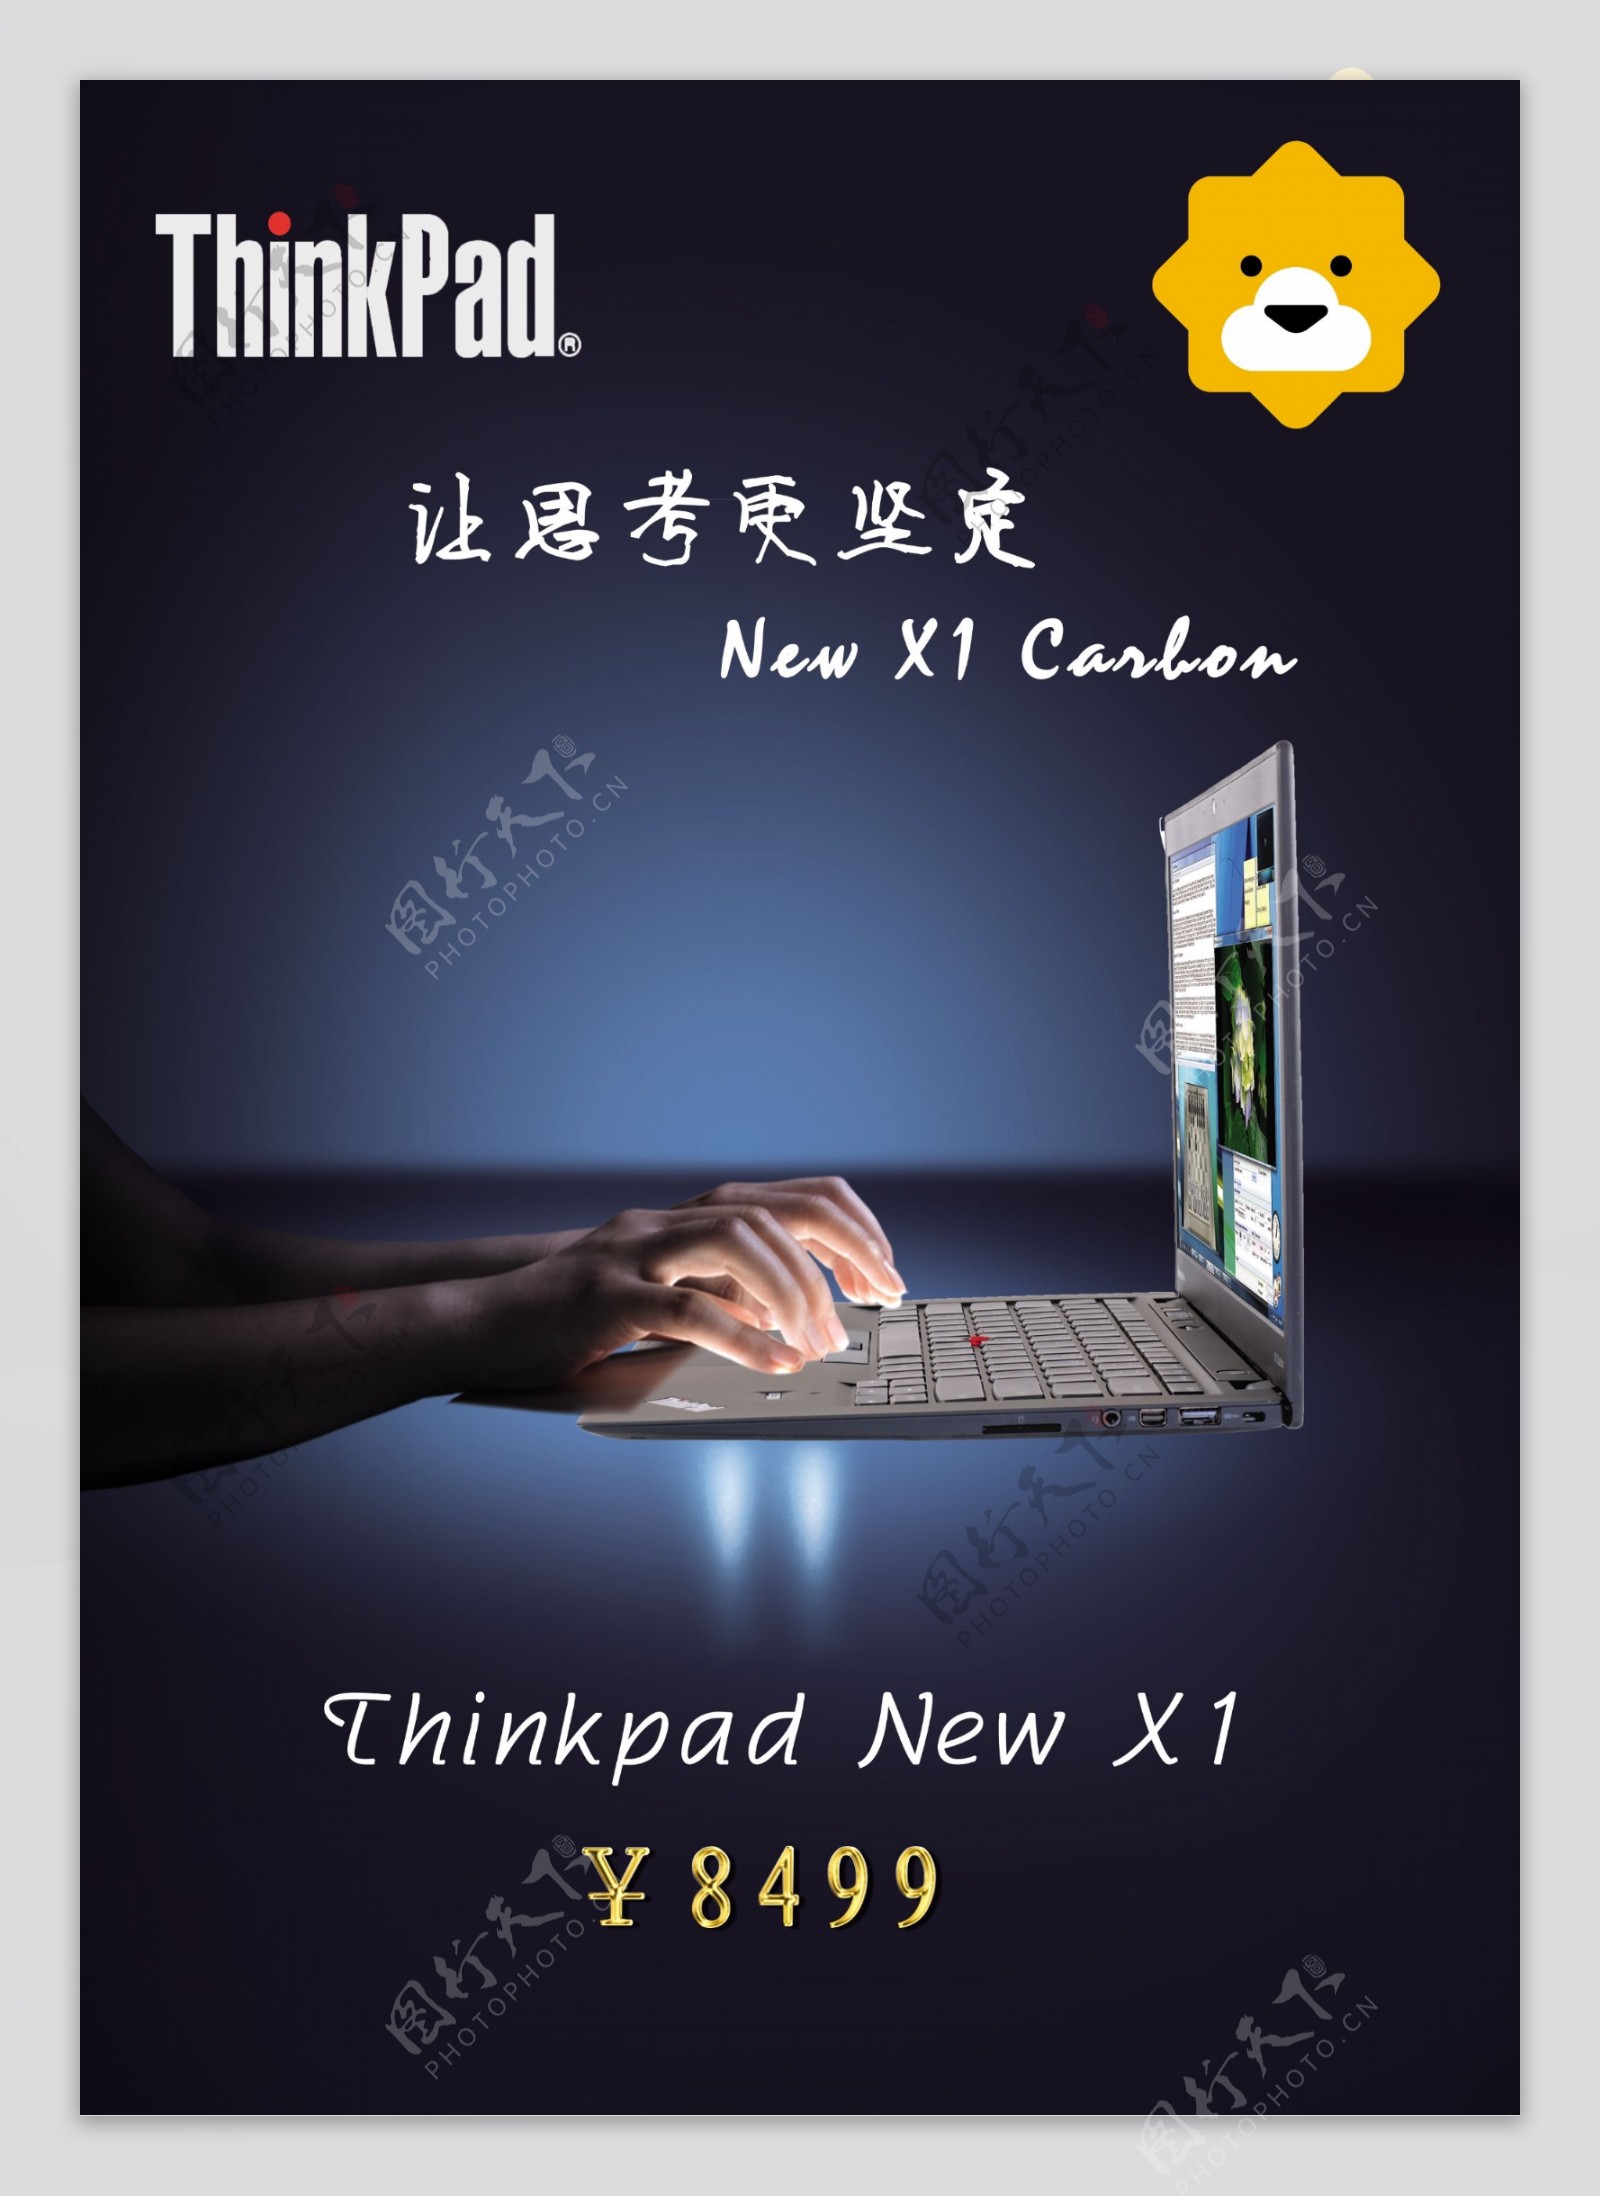 苏宁易购ThinkPad电脑